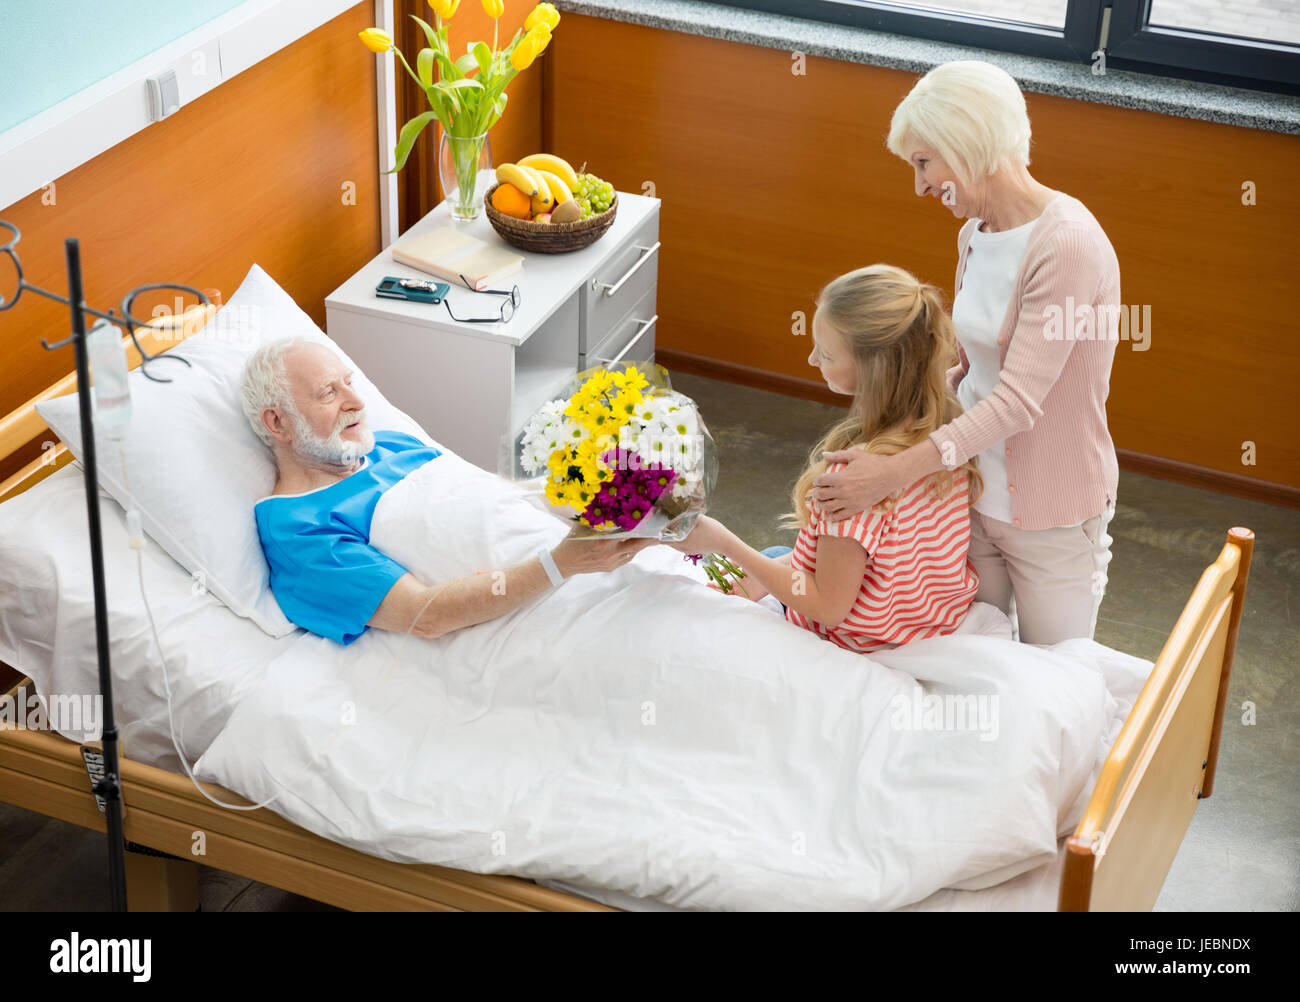 Навестить пациента. Навещать больного в больнице. В больнице пациента навещают. Посещение больного в больнице родственниками.